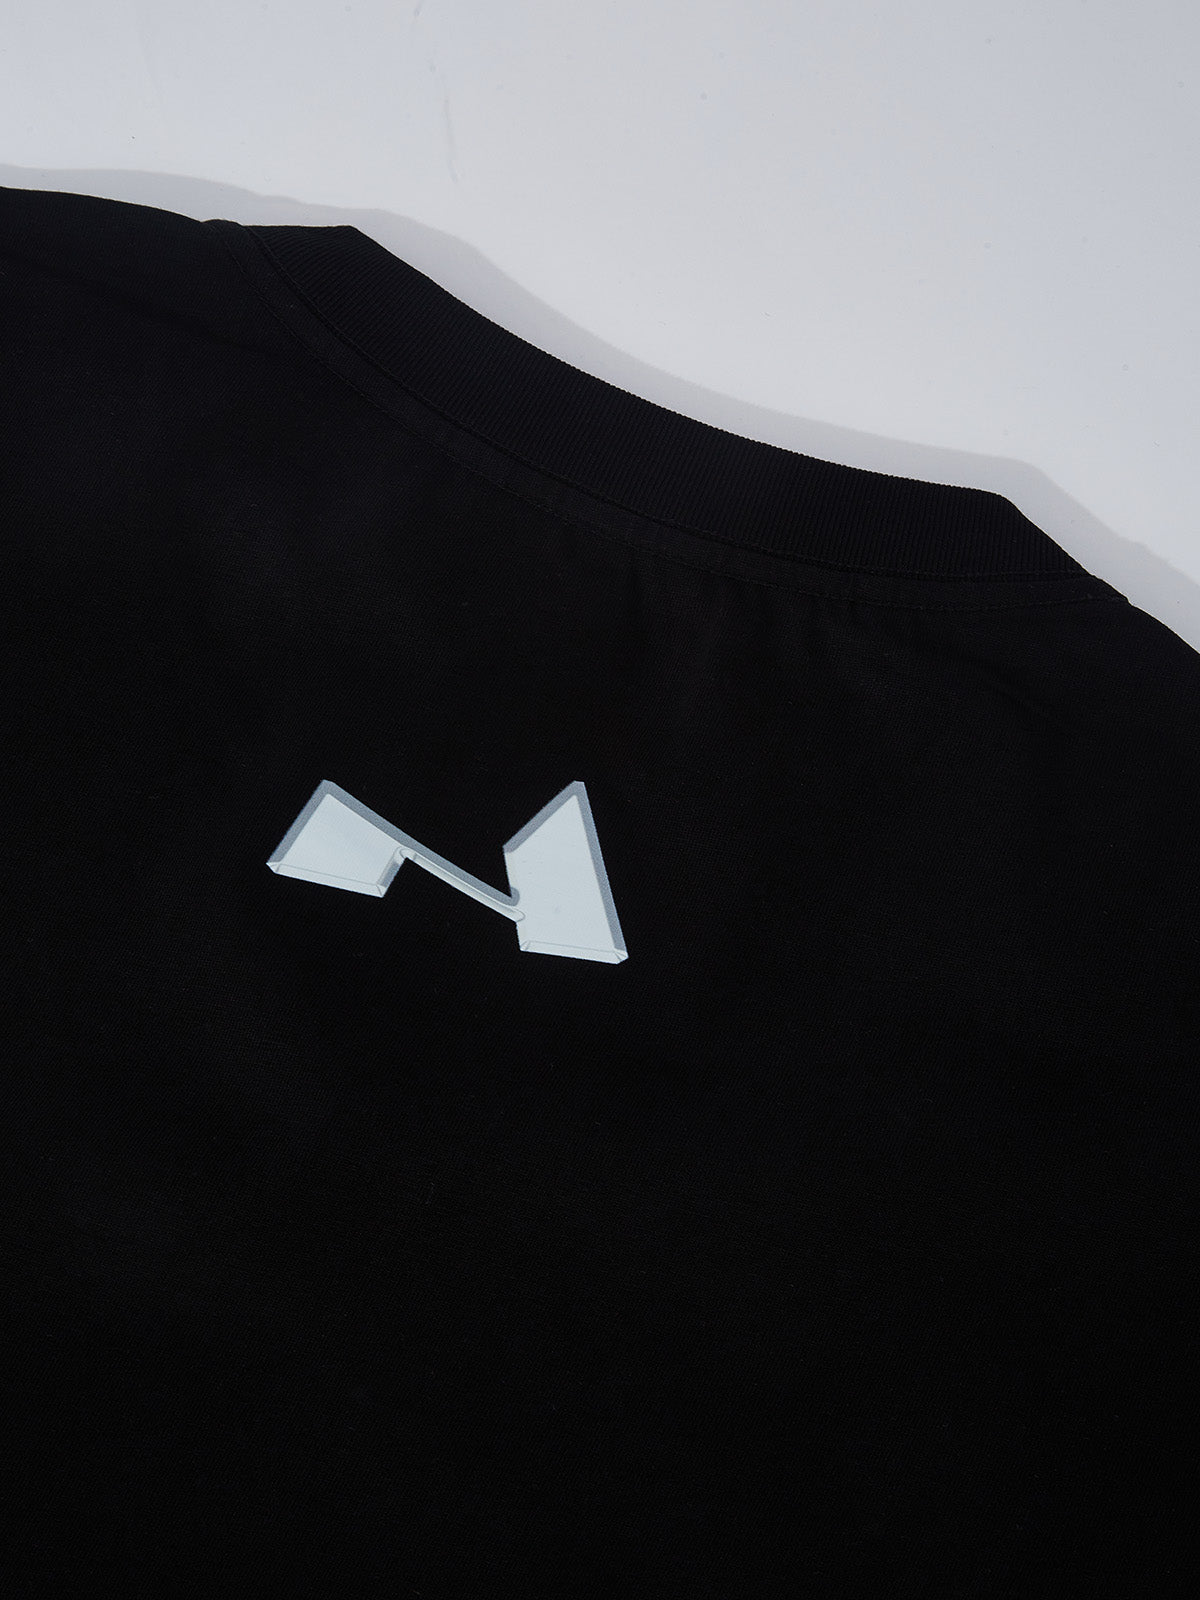 OBSTACLES &amp; DANGERS© Schwarzes T-Shirt mit Madonna und Kind, erhältlich in 6 Farben